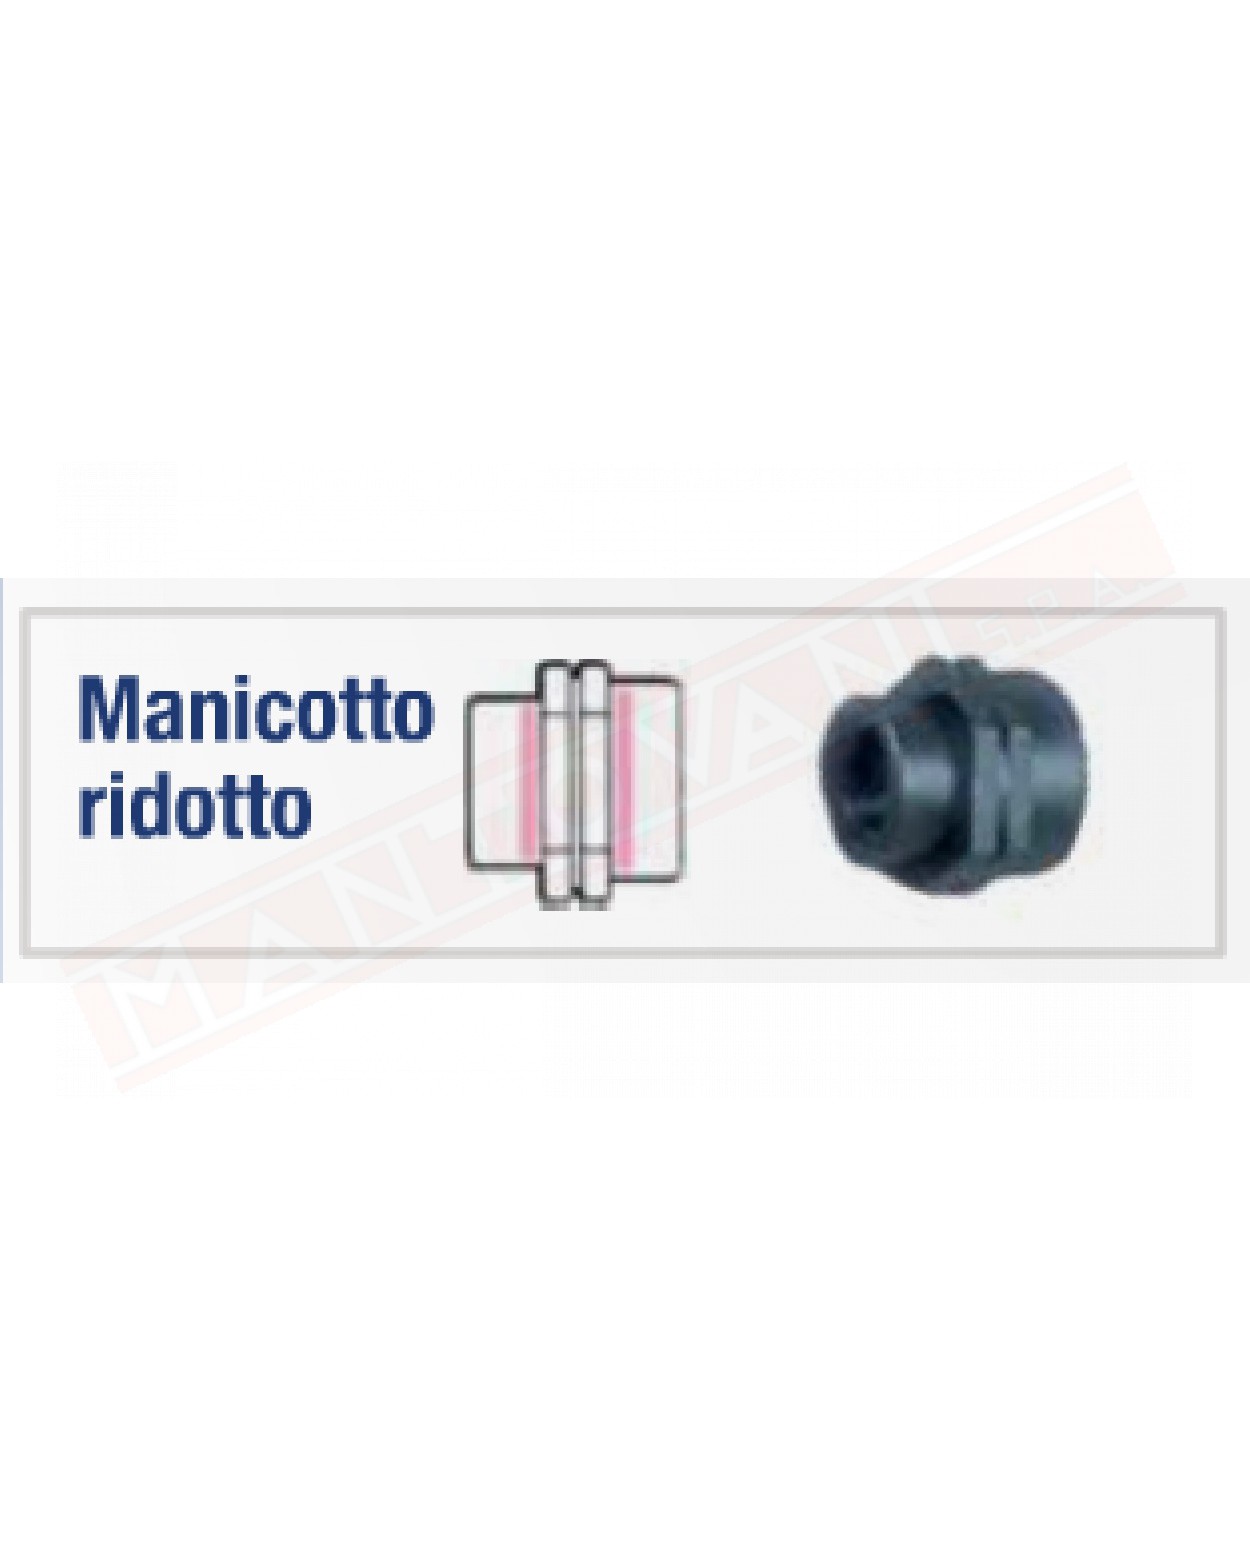 DEL TAGLIA MR-100\075-G MANICOTTO RIDOTTO 1